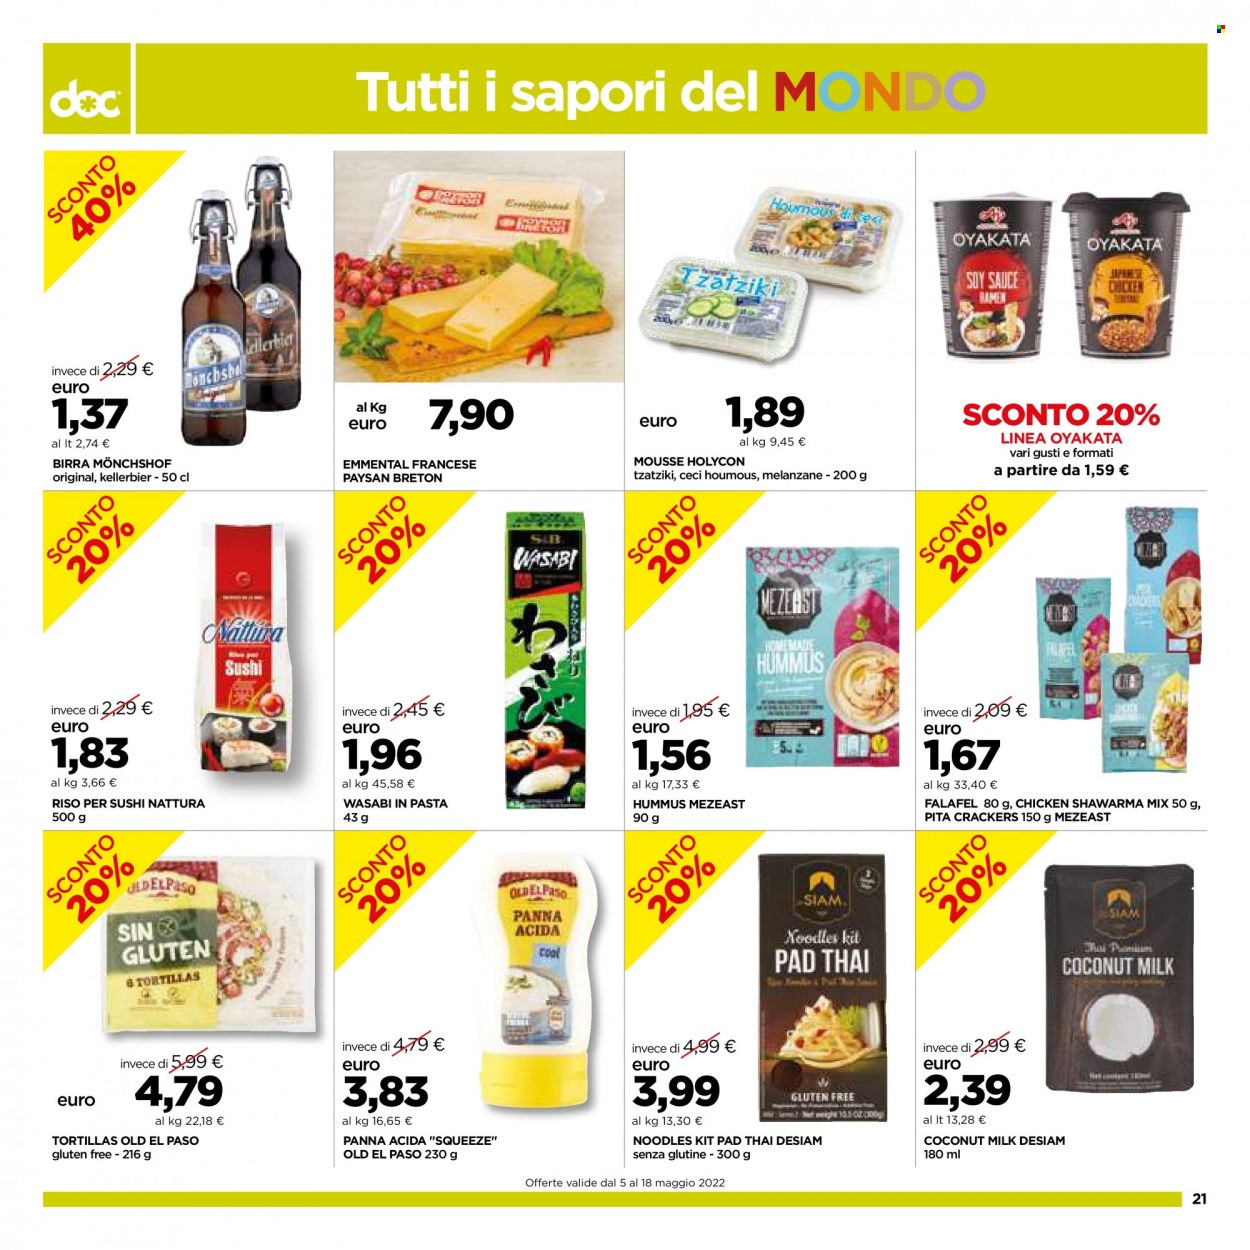 Volantino doc supermercati - 5.5.2022 - 18.5.2022. Pagina 21.